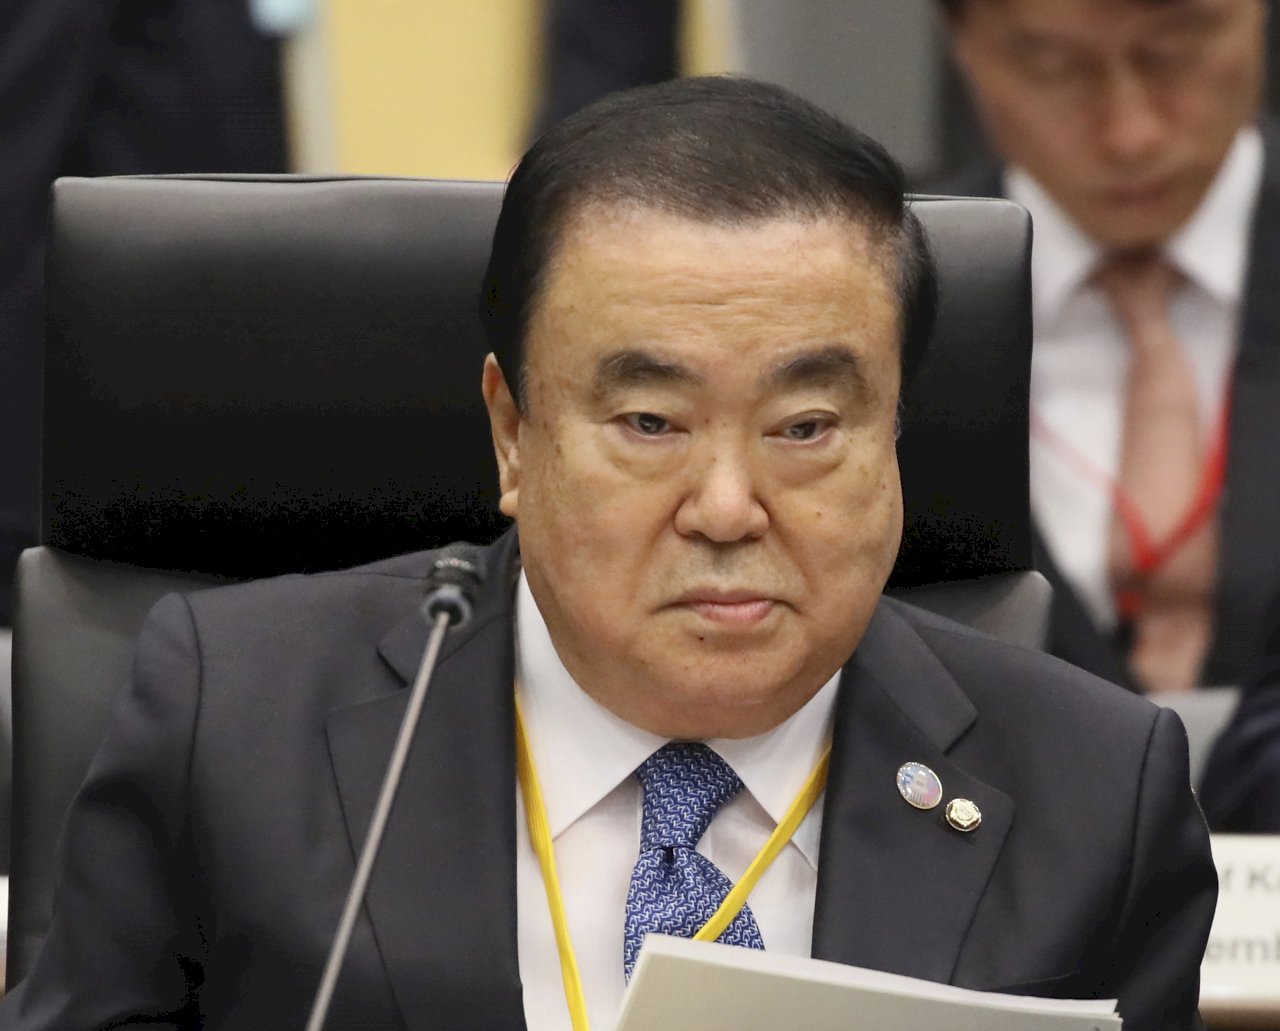 強徵韓國勞工對日索賠 南韓國會議長提新解法